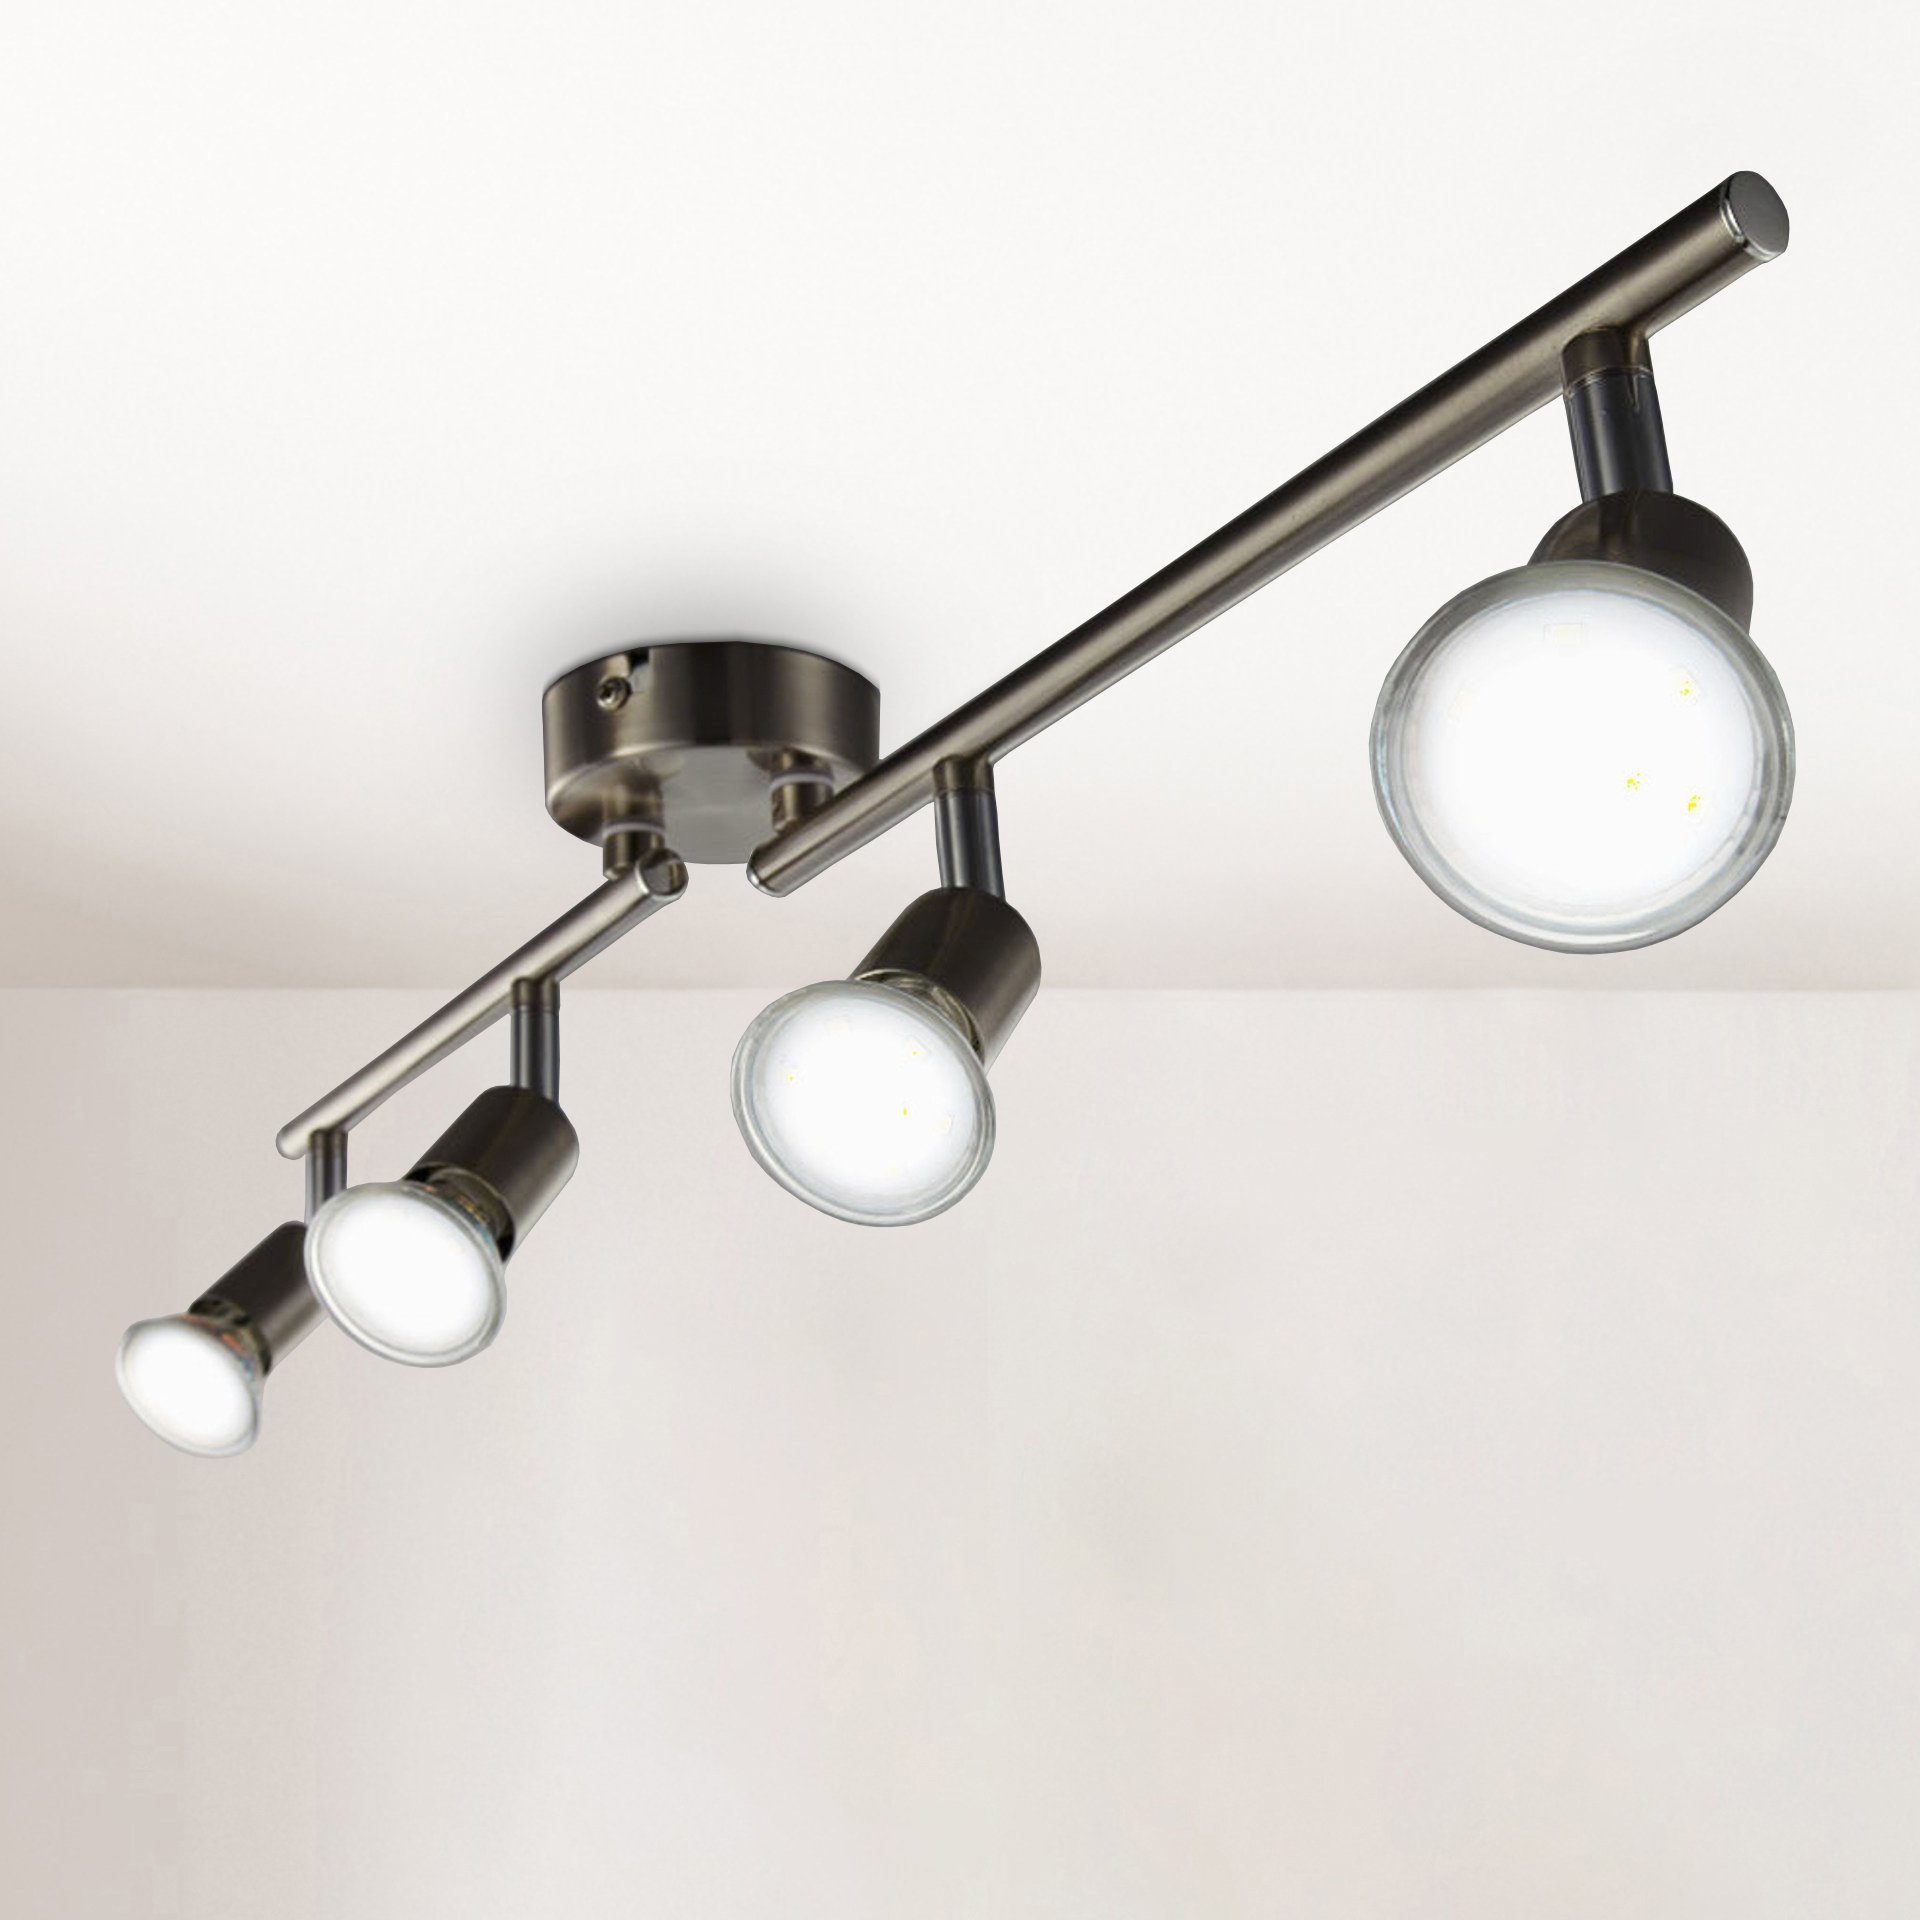 LED Design Decken Leuchte Küchen Spot Leiste verstellbar Flur Strahler Lampe 